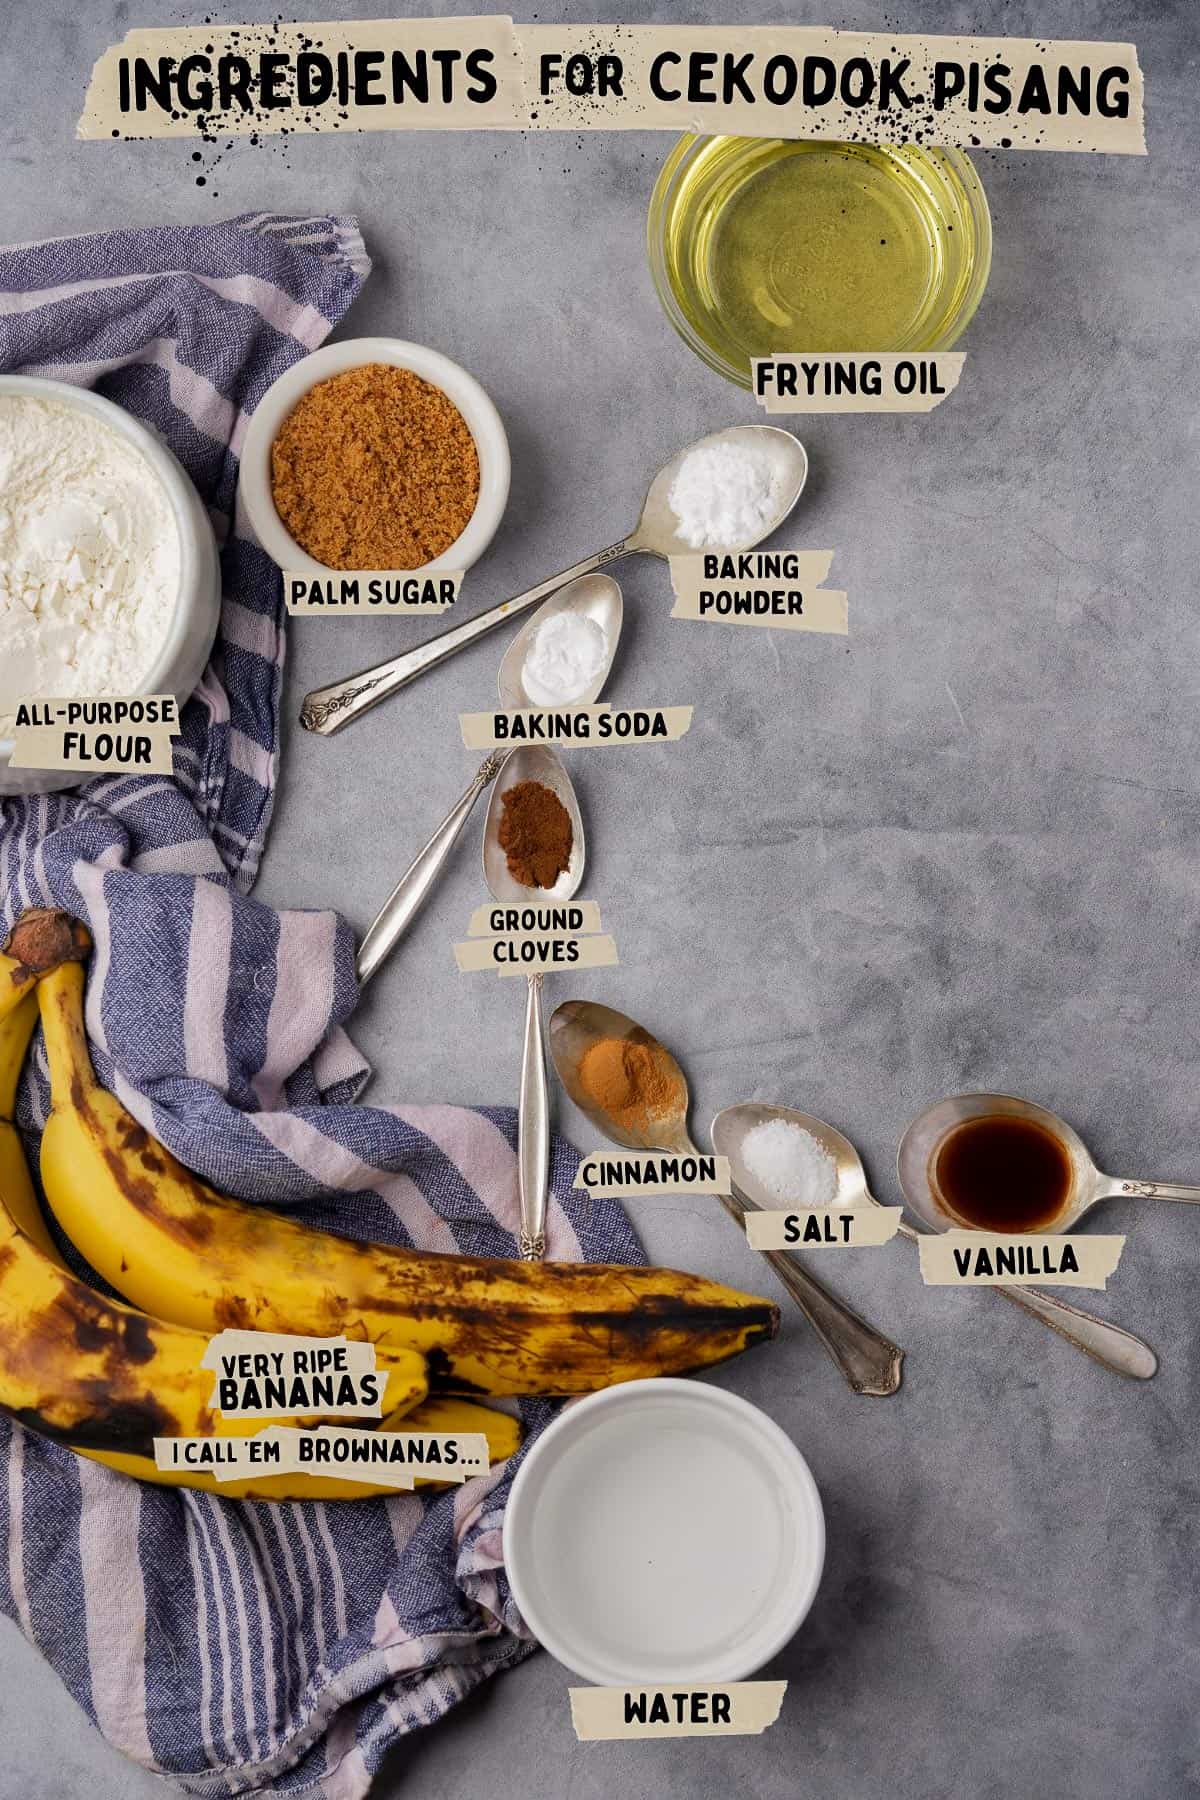 Ingredients for cekodok pisang.